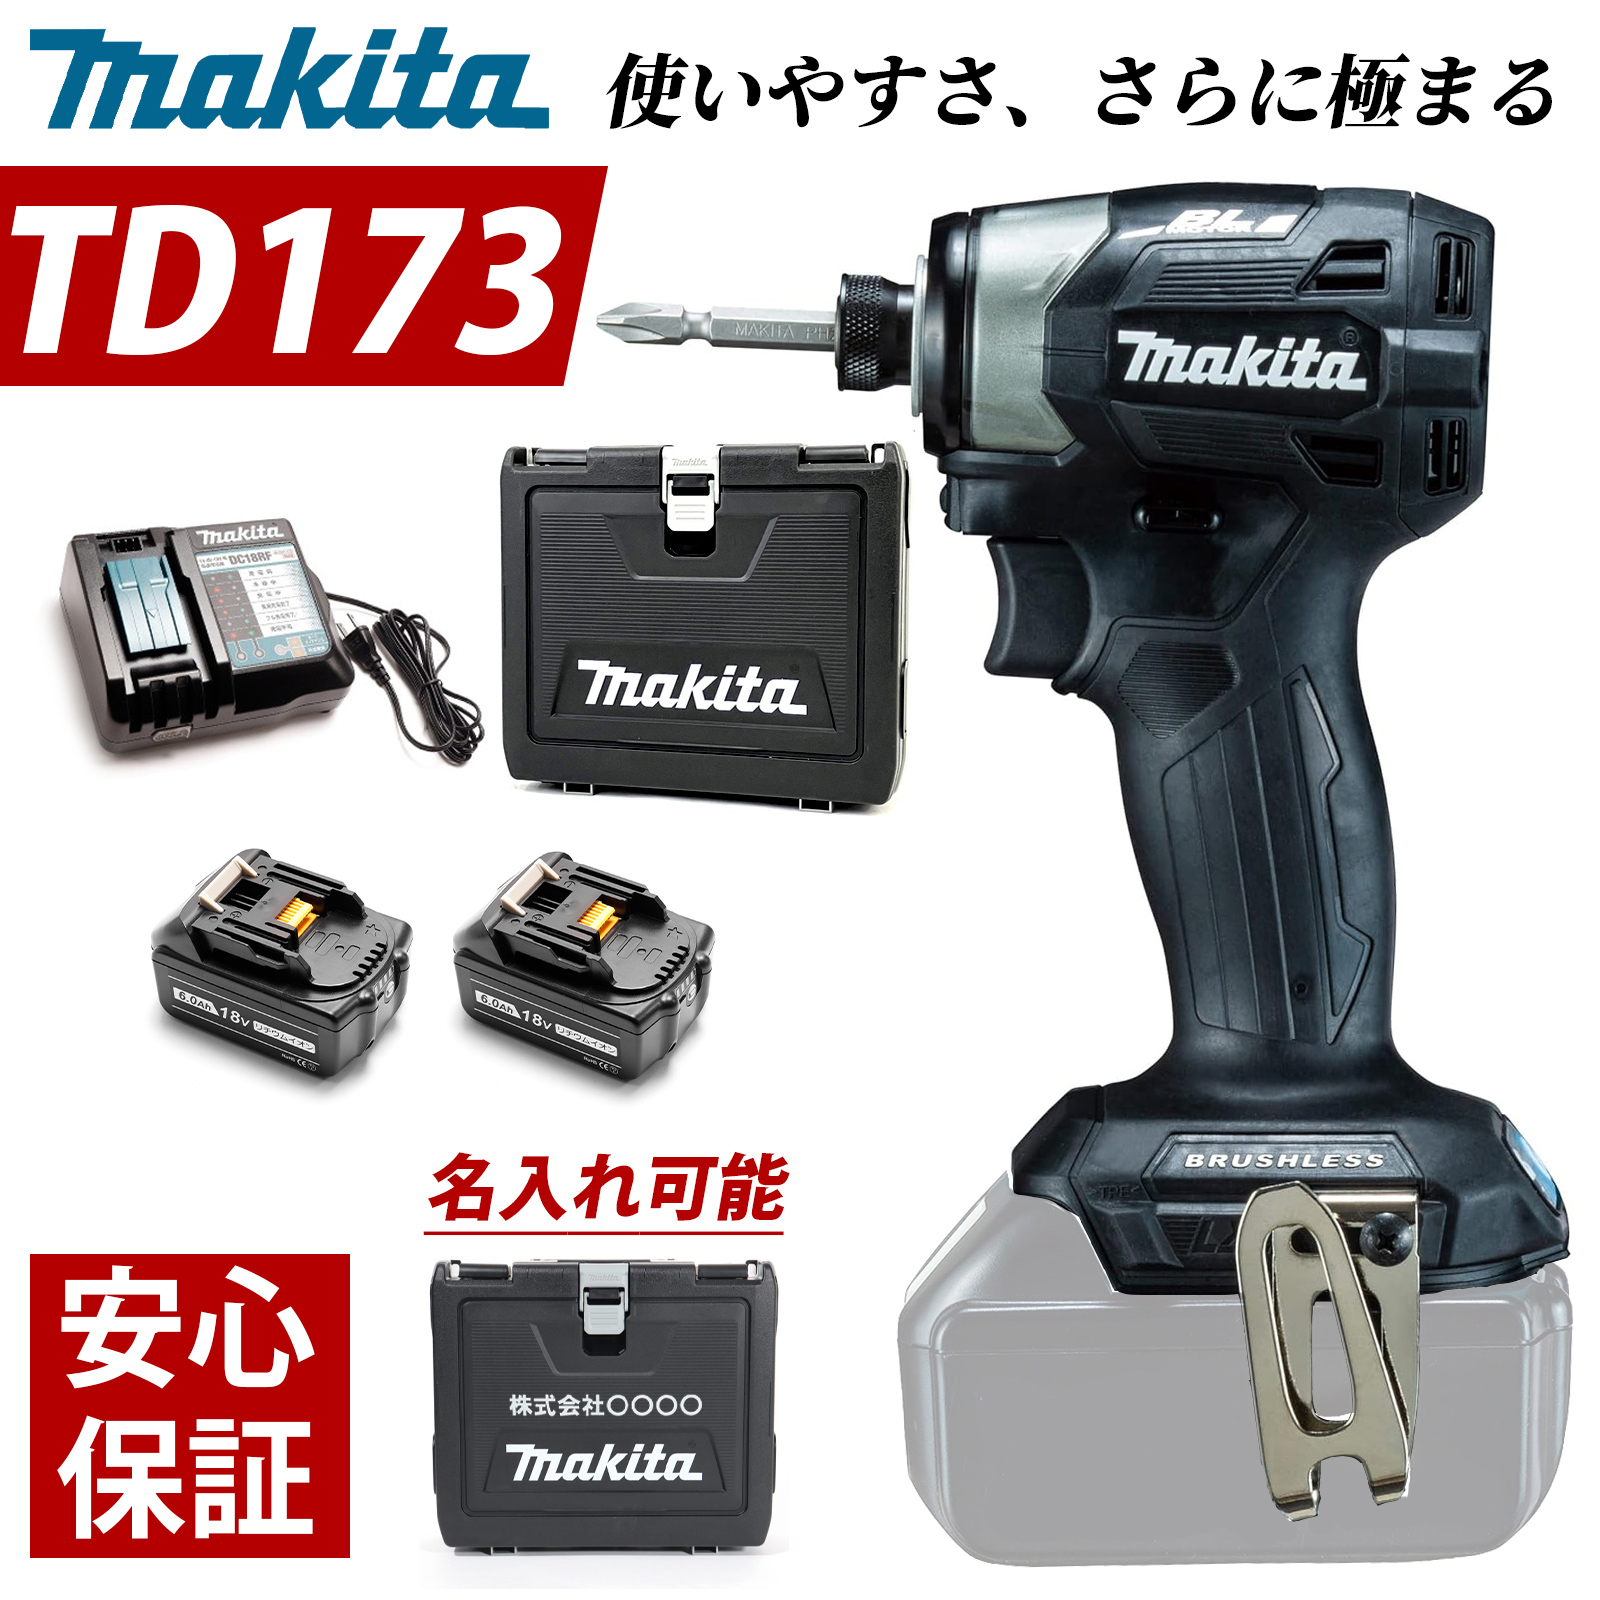 マキタ インパクトドライバー 18V TD173DRGX フルセット MAKITA TD172 後継 充 電式 BL1860B 互換 バッテリー 2個  6.0Ah 急速充電器 収納ケース 付き